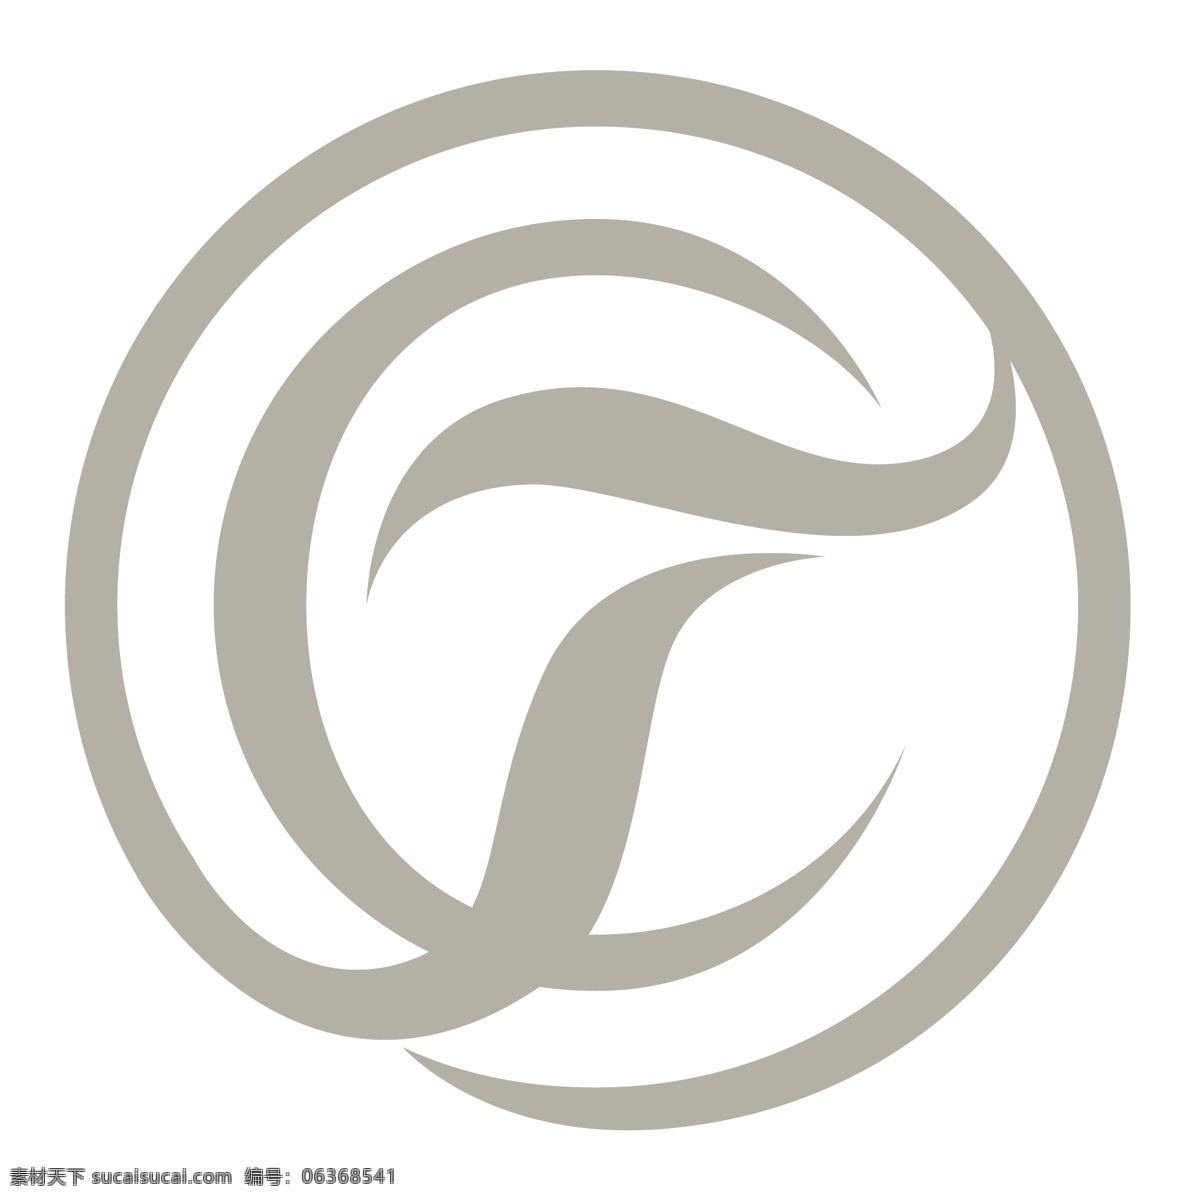 购物中心 塔特尔 交叉 免费 标志 商场 自由 psd源文件 logo设计